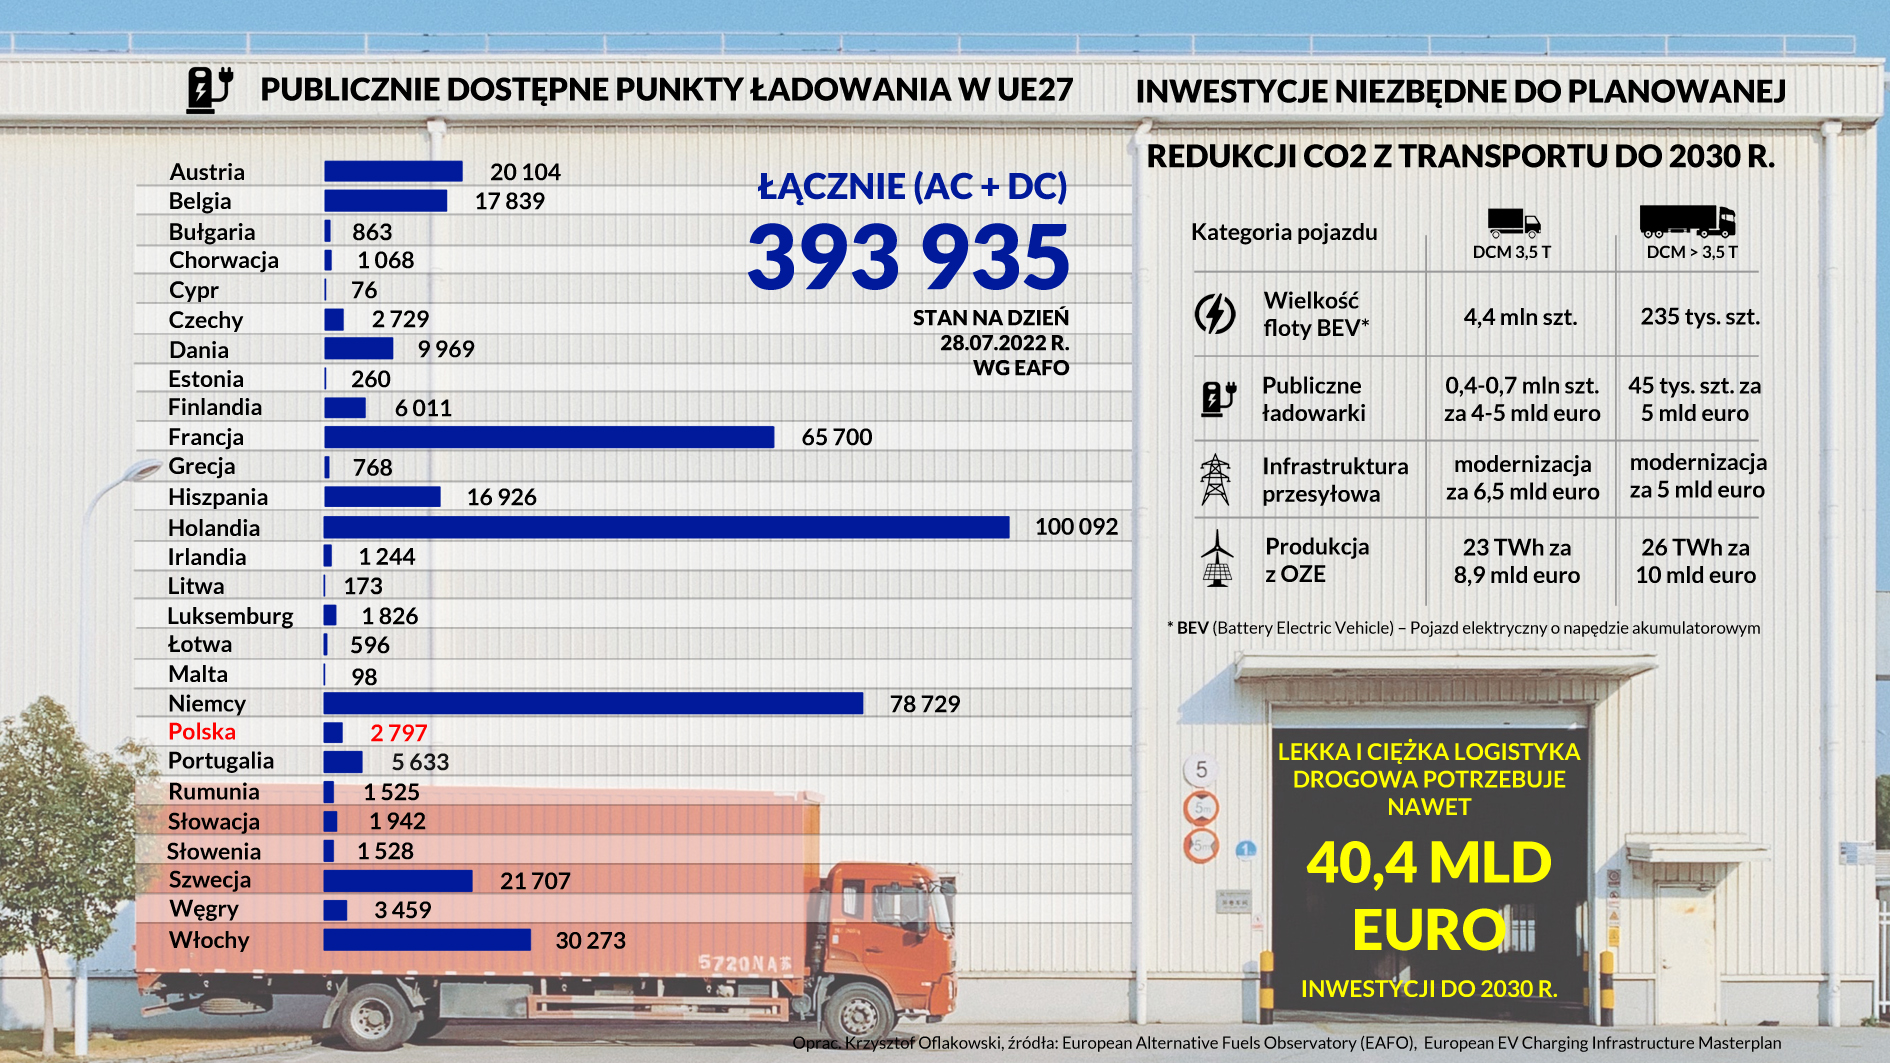 Logistyka drogowa - publiczne punkty ładowania EU27 i niezbędne <a class=